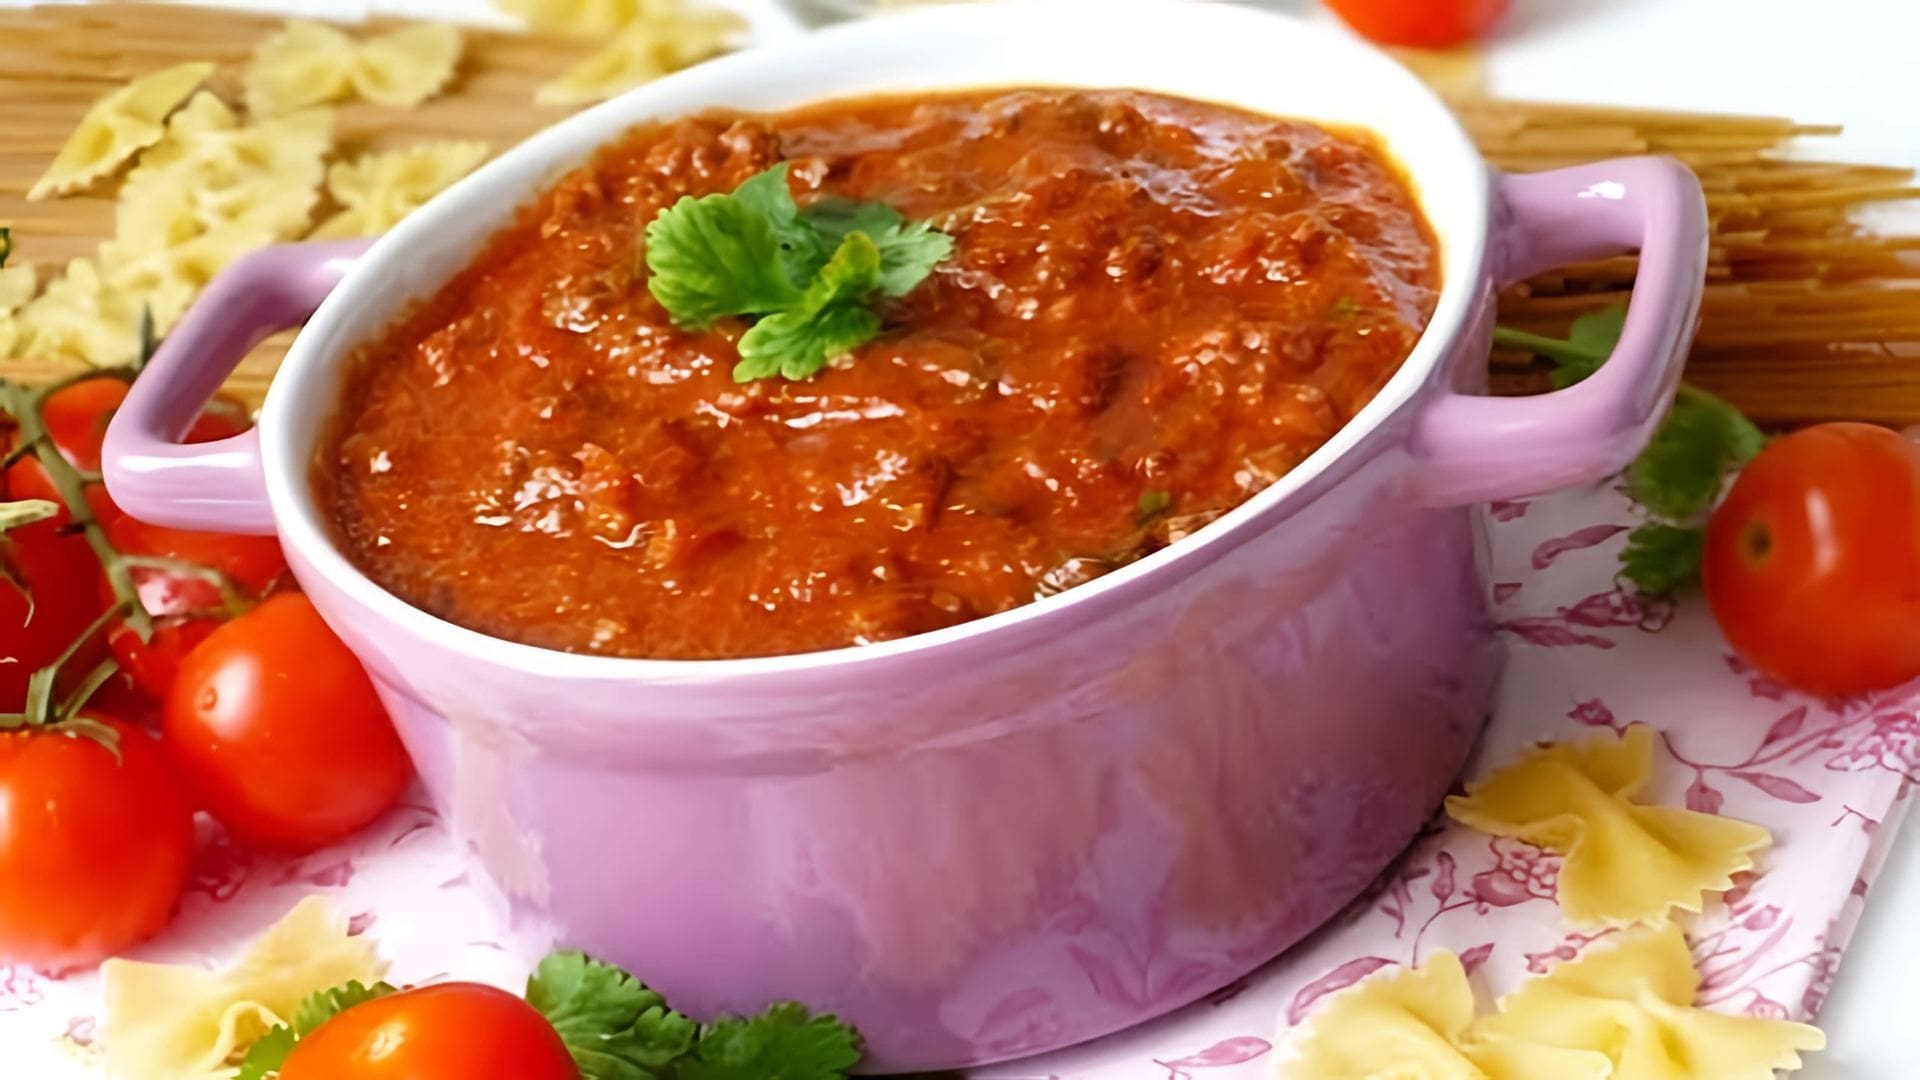 В этом видео демонстрируется процесс приготовления соуса болоньезе, который является одним из самых популярных соусов для пасты и лазаньи